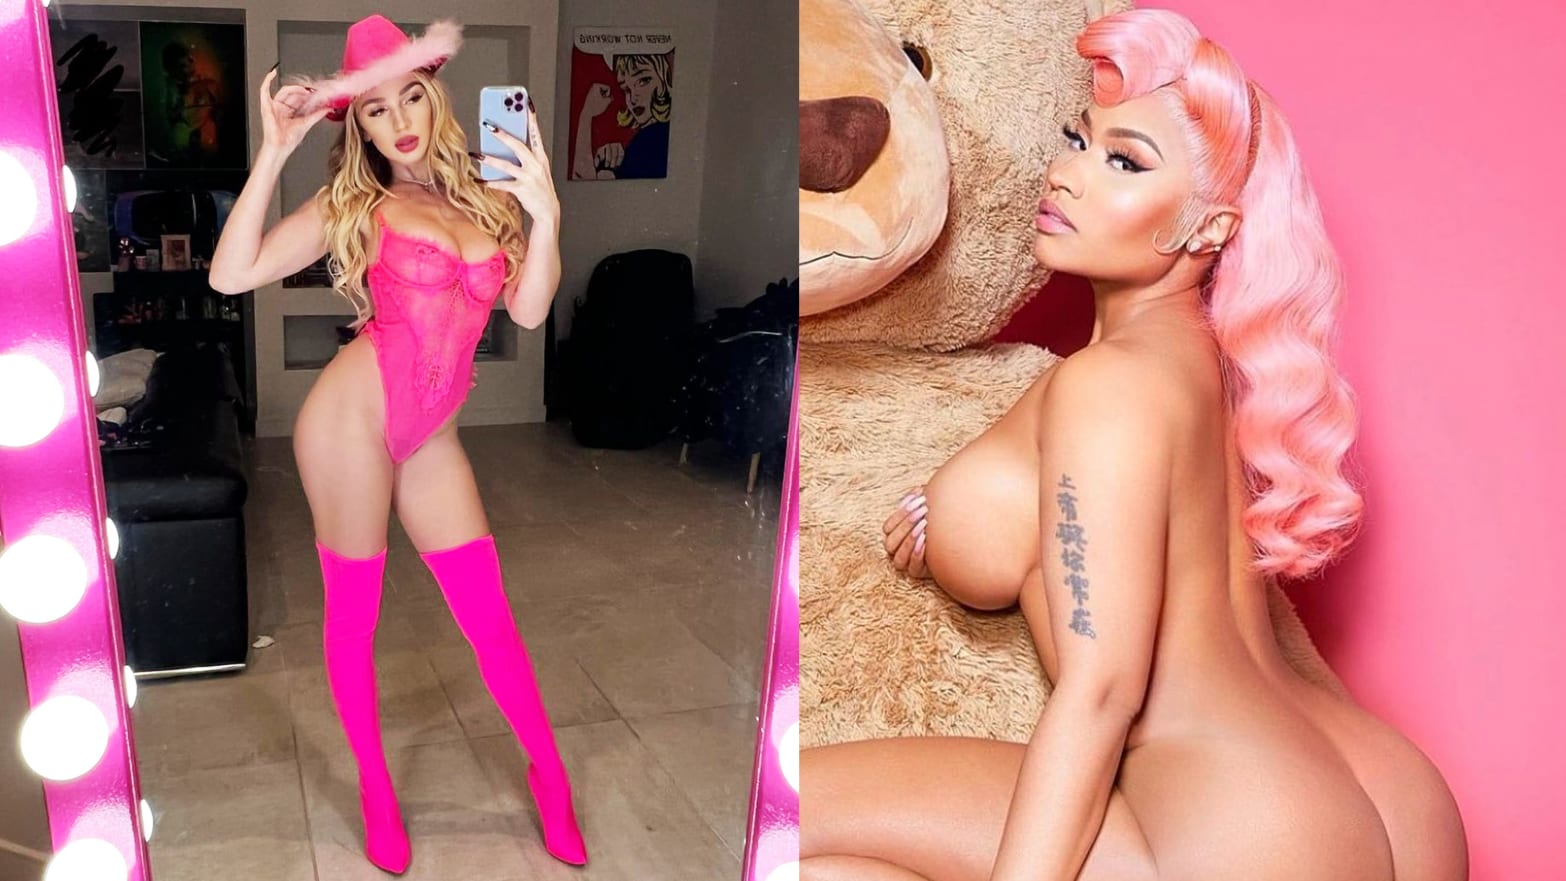 Serdave Naket Foto - Porn Star Kendra Sunderland Asks Why Nicki Minaj Can Get Naked on Instagram  and Porn Stars Can't